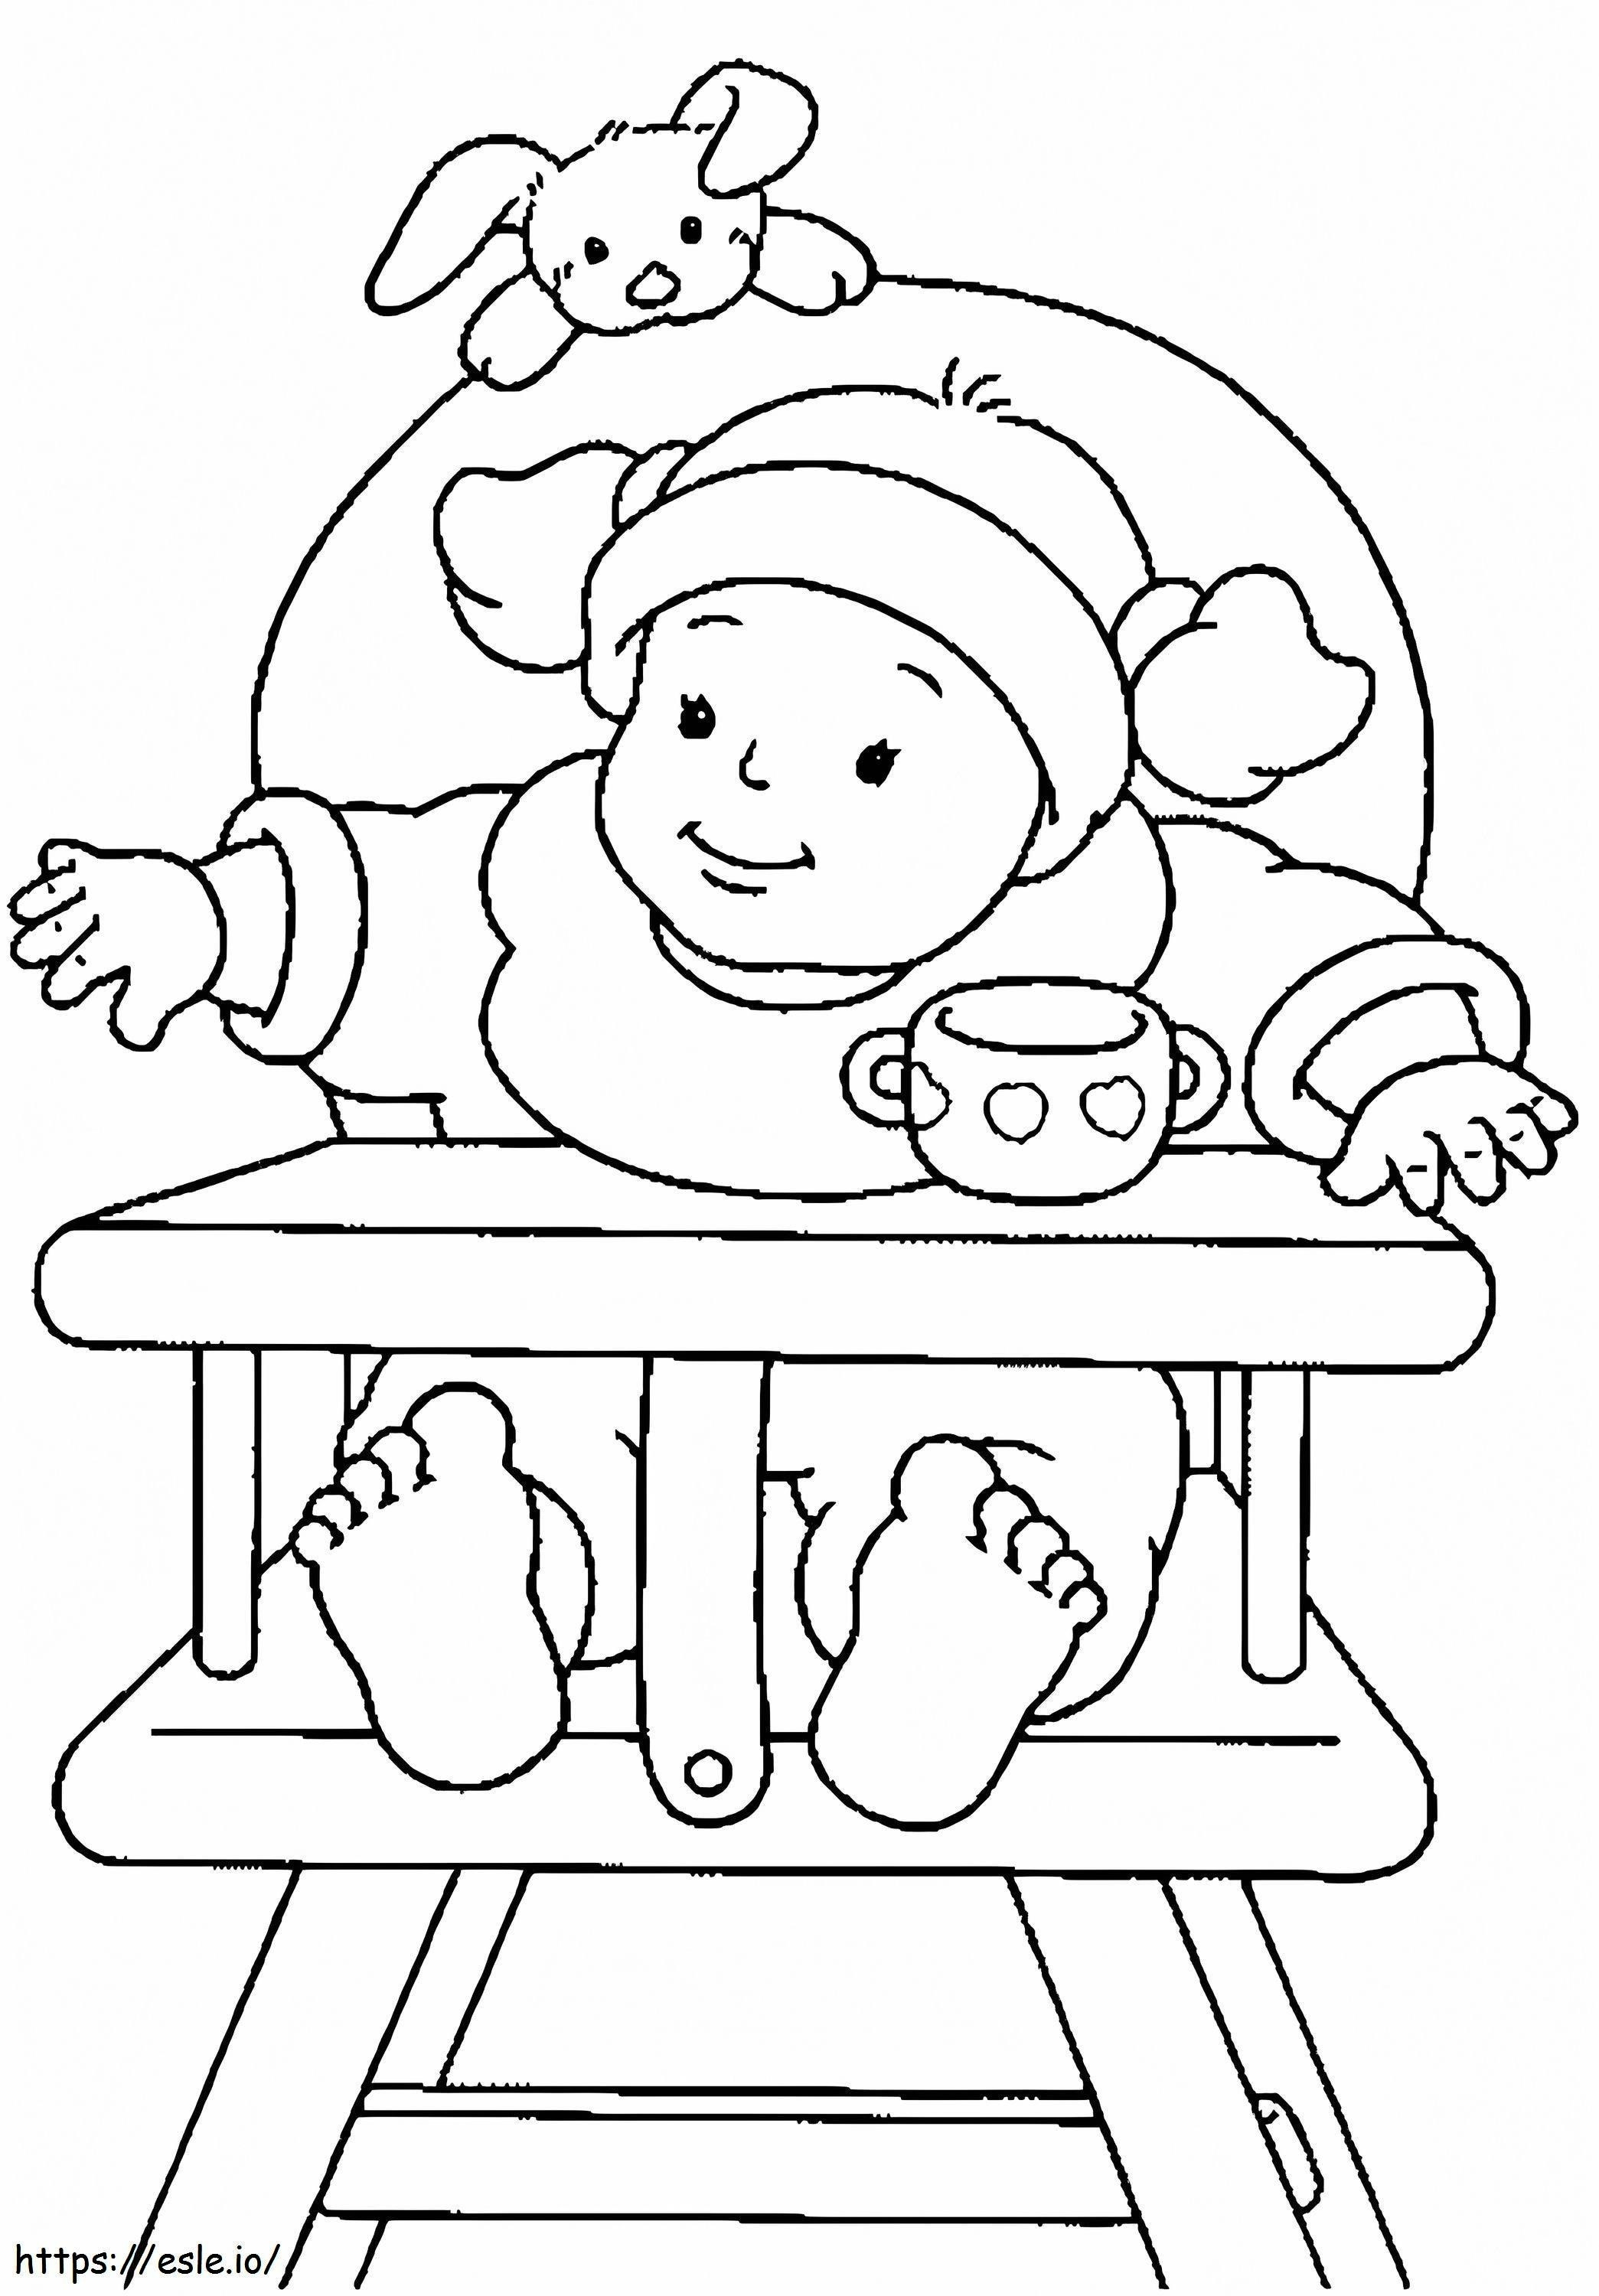 Coloriage Bébé sur chaise à imprimer dessin